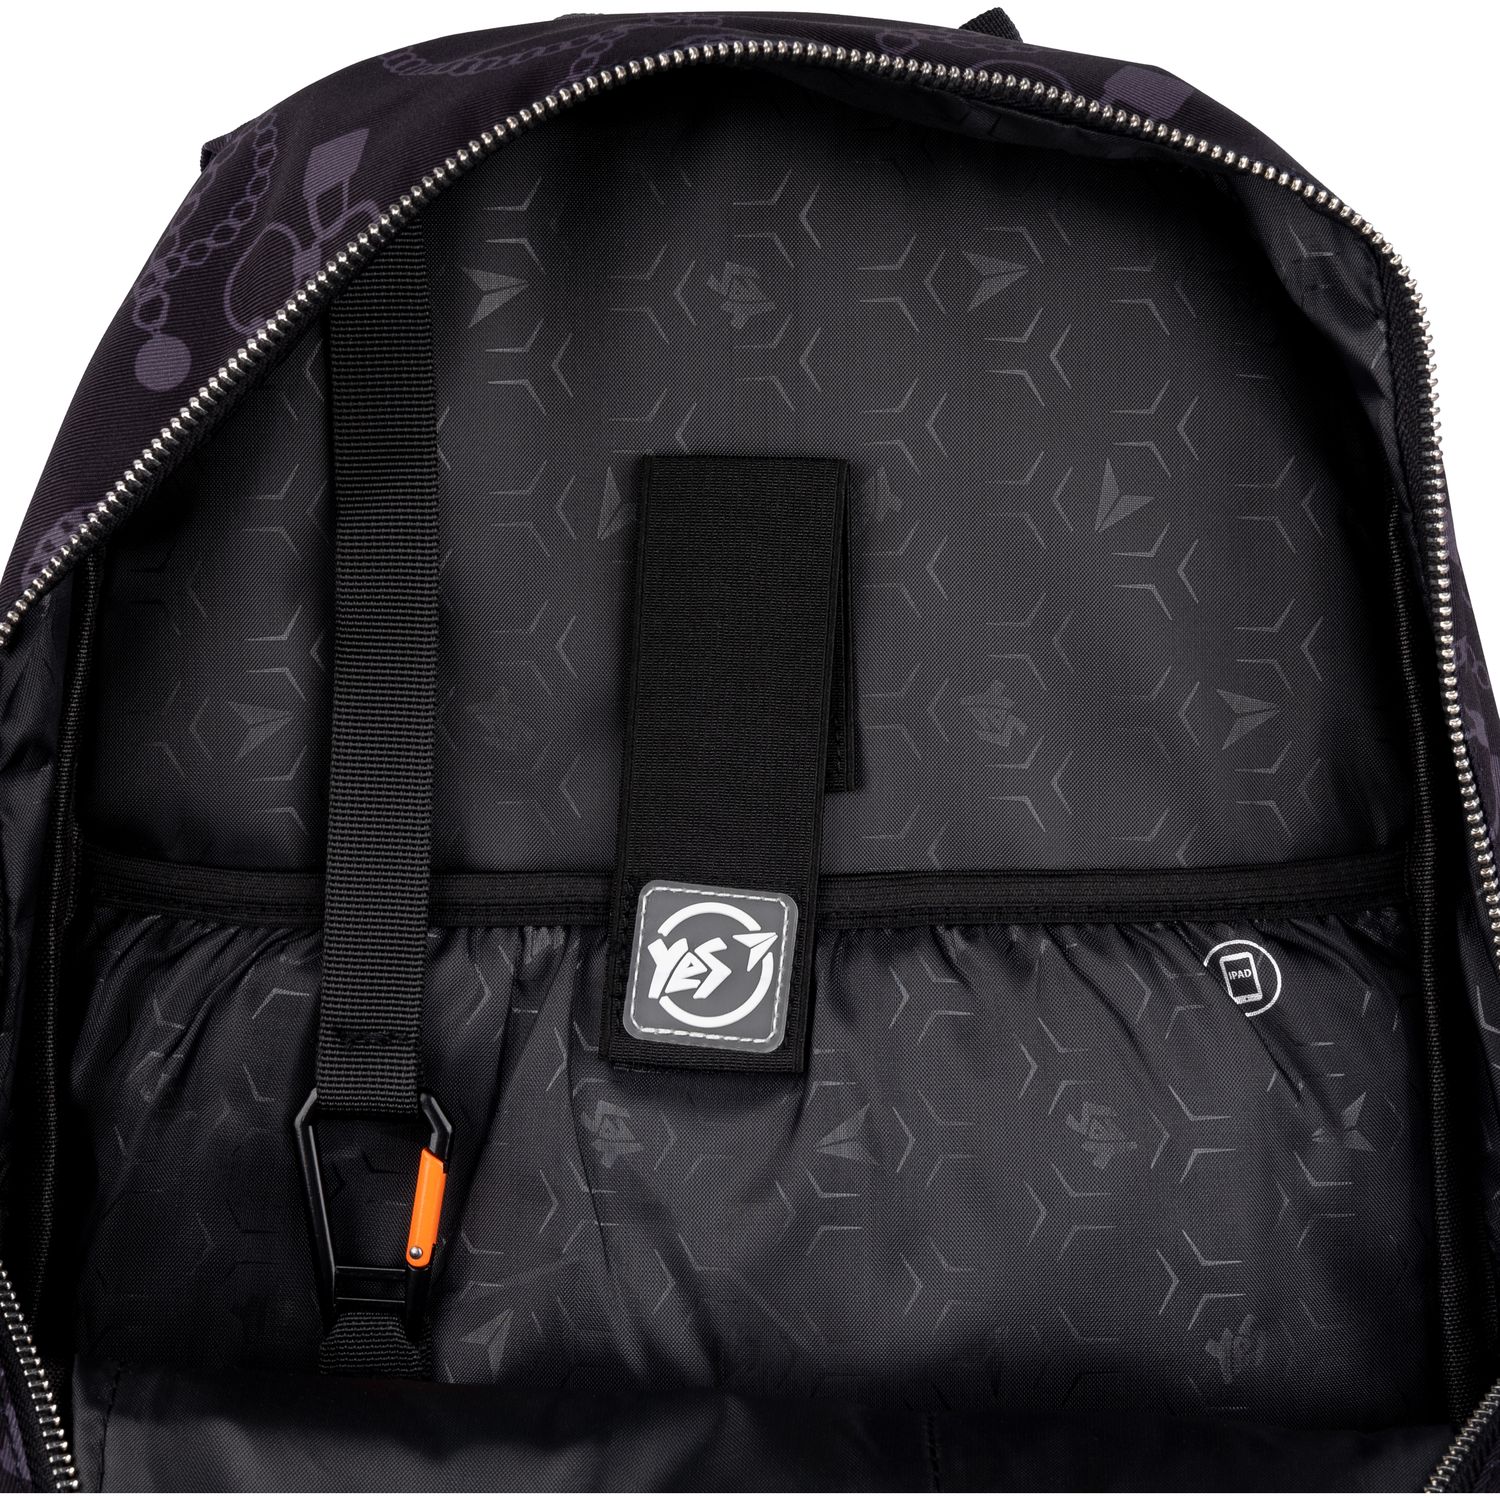 Рюкзак Yes TS-61 Infinity, серый с черным (558912) - фото 13